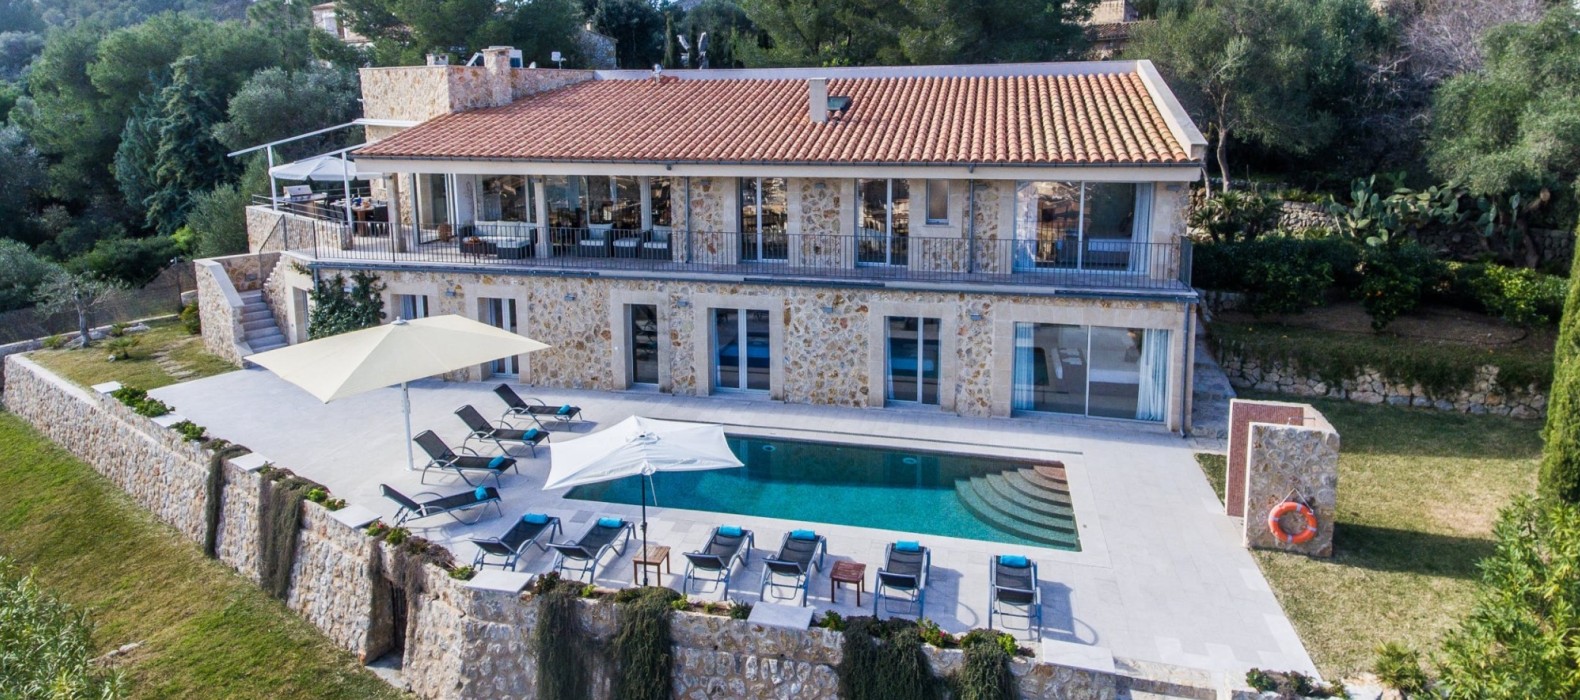 Exterior pool view of Casa Dulce Vista in Mallorca